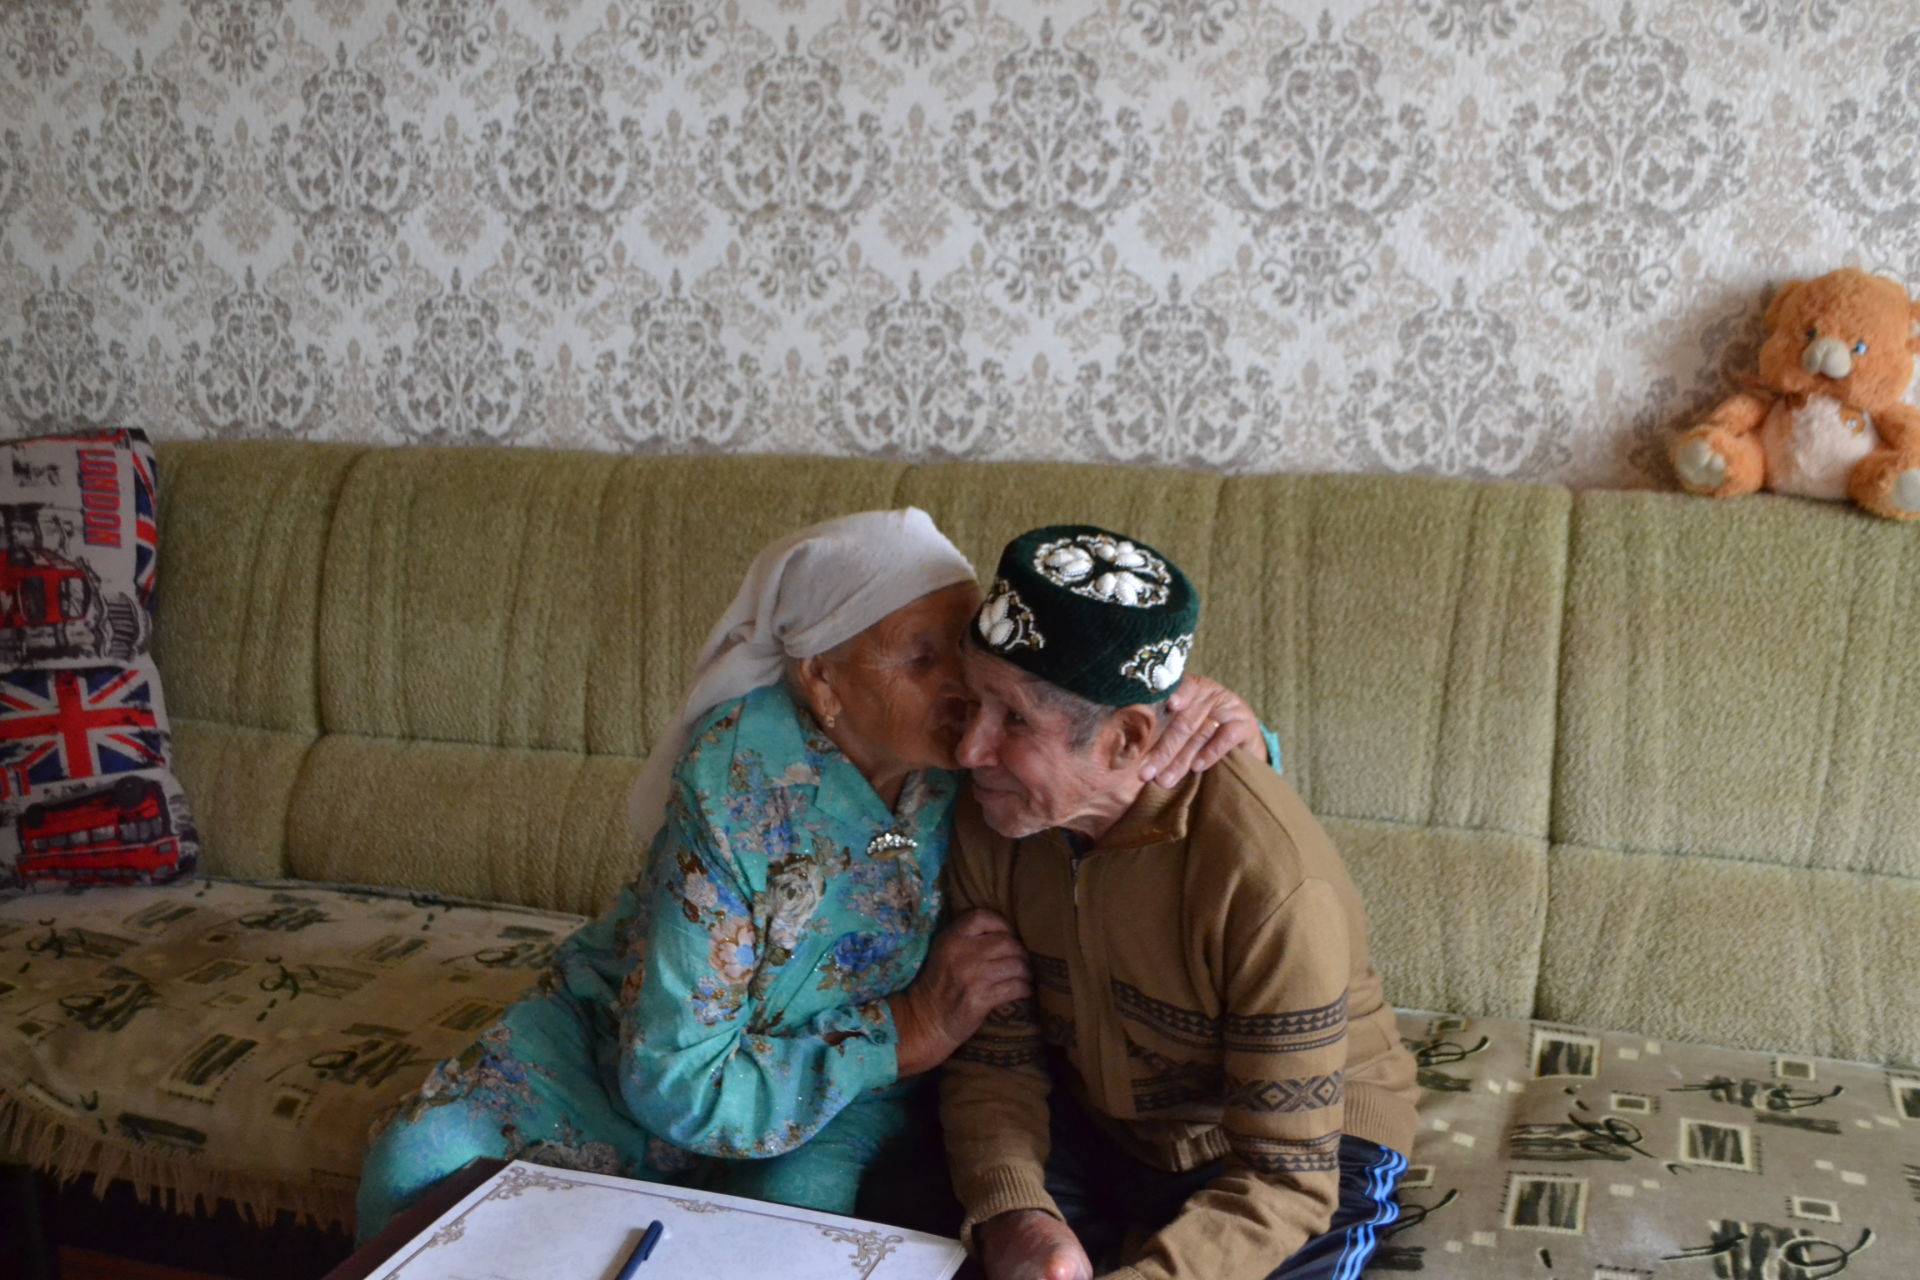 Супруги Сафиуллины 60 лет вместе в любви и уважении друг к другу